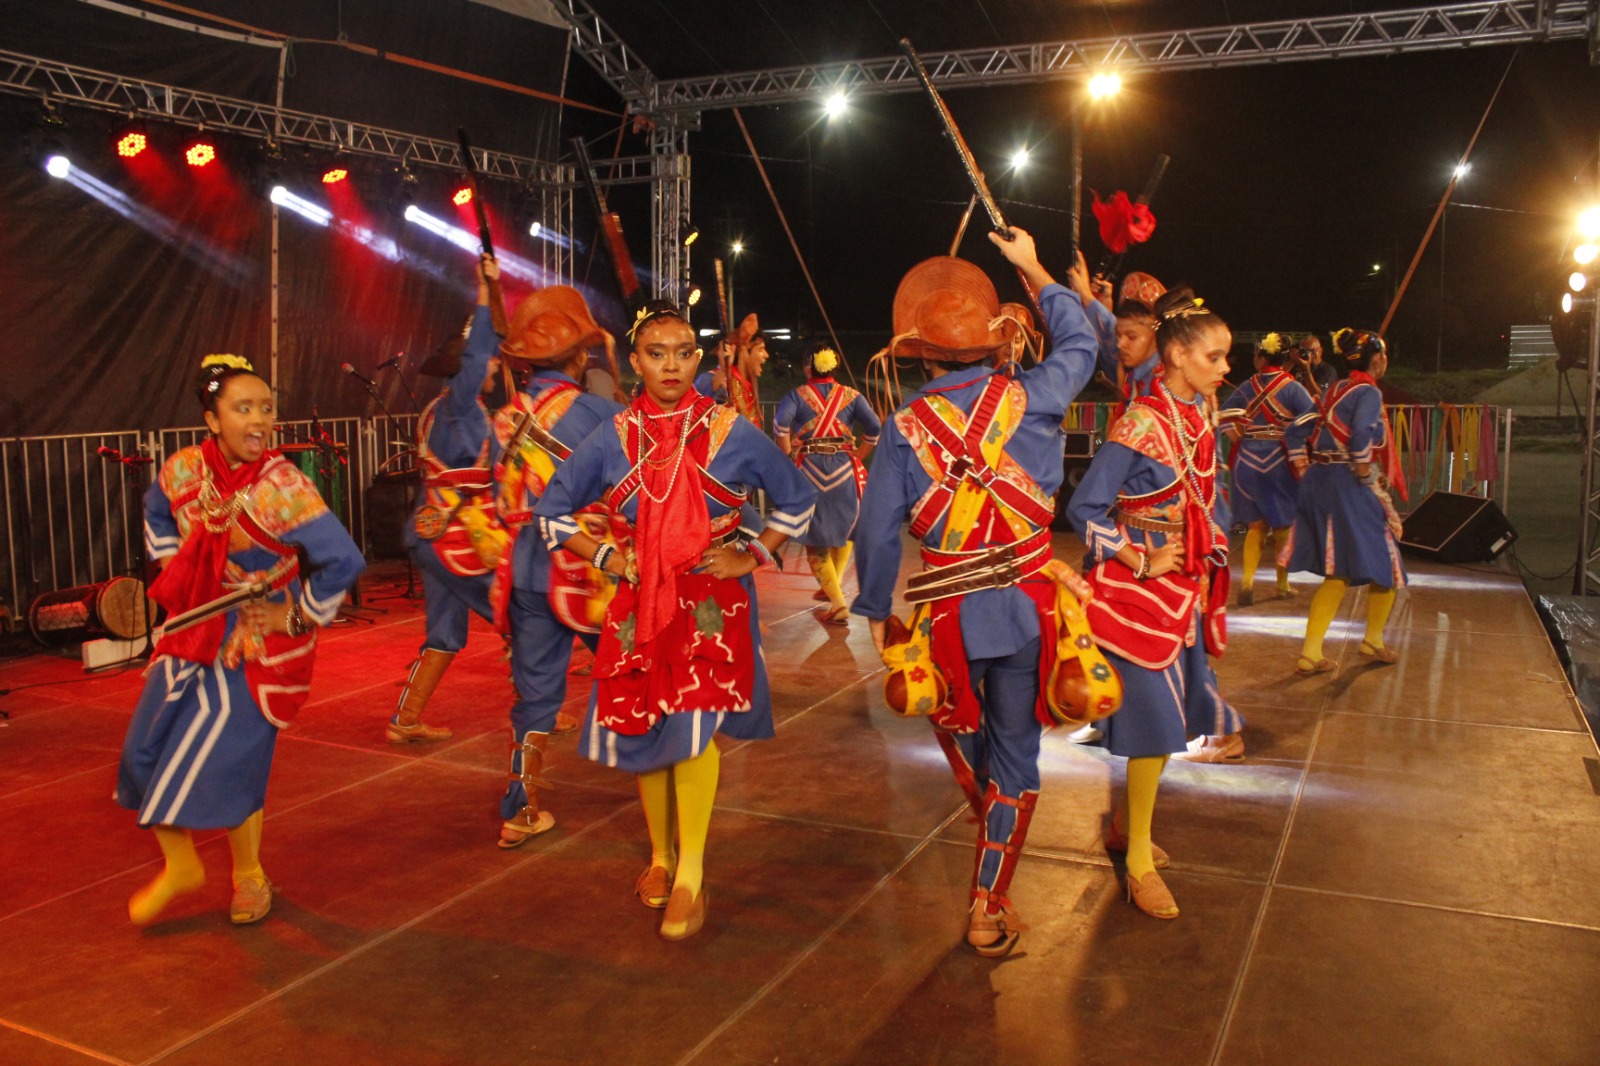 Encontro Nordestino de Xaxado celebra dança popular